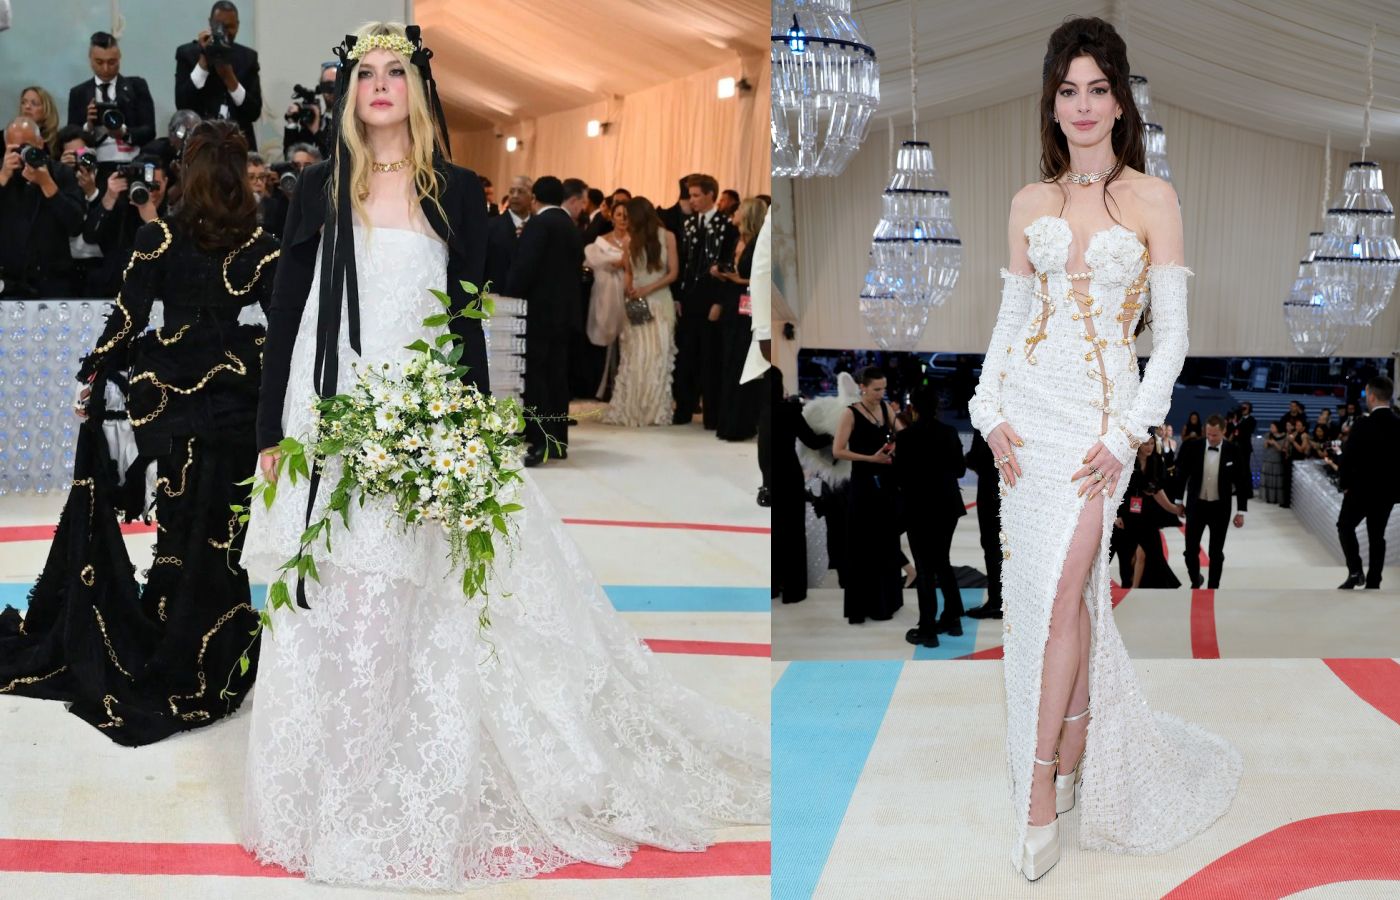 MET Gala attendee Elle Fanning in Cartier High Jewellery, alongside Anne Hathaway in Bulgari High Jewellery